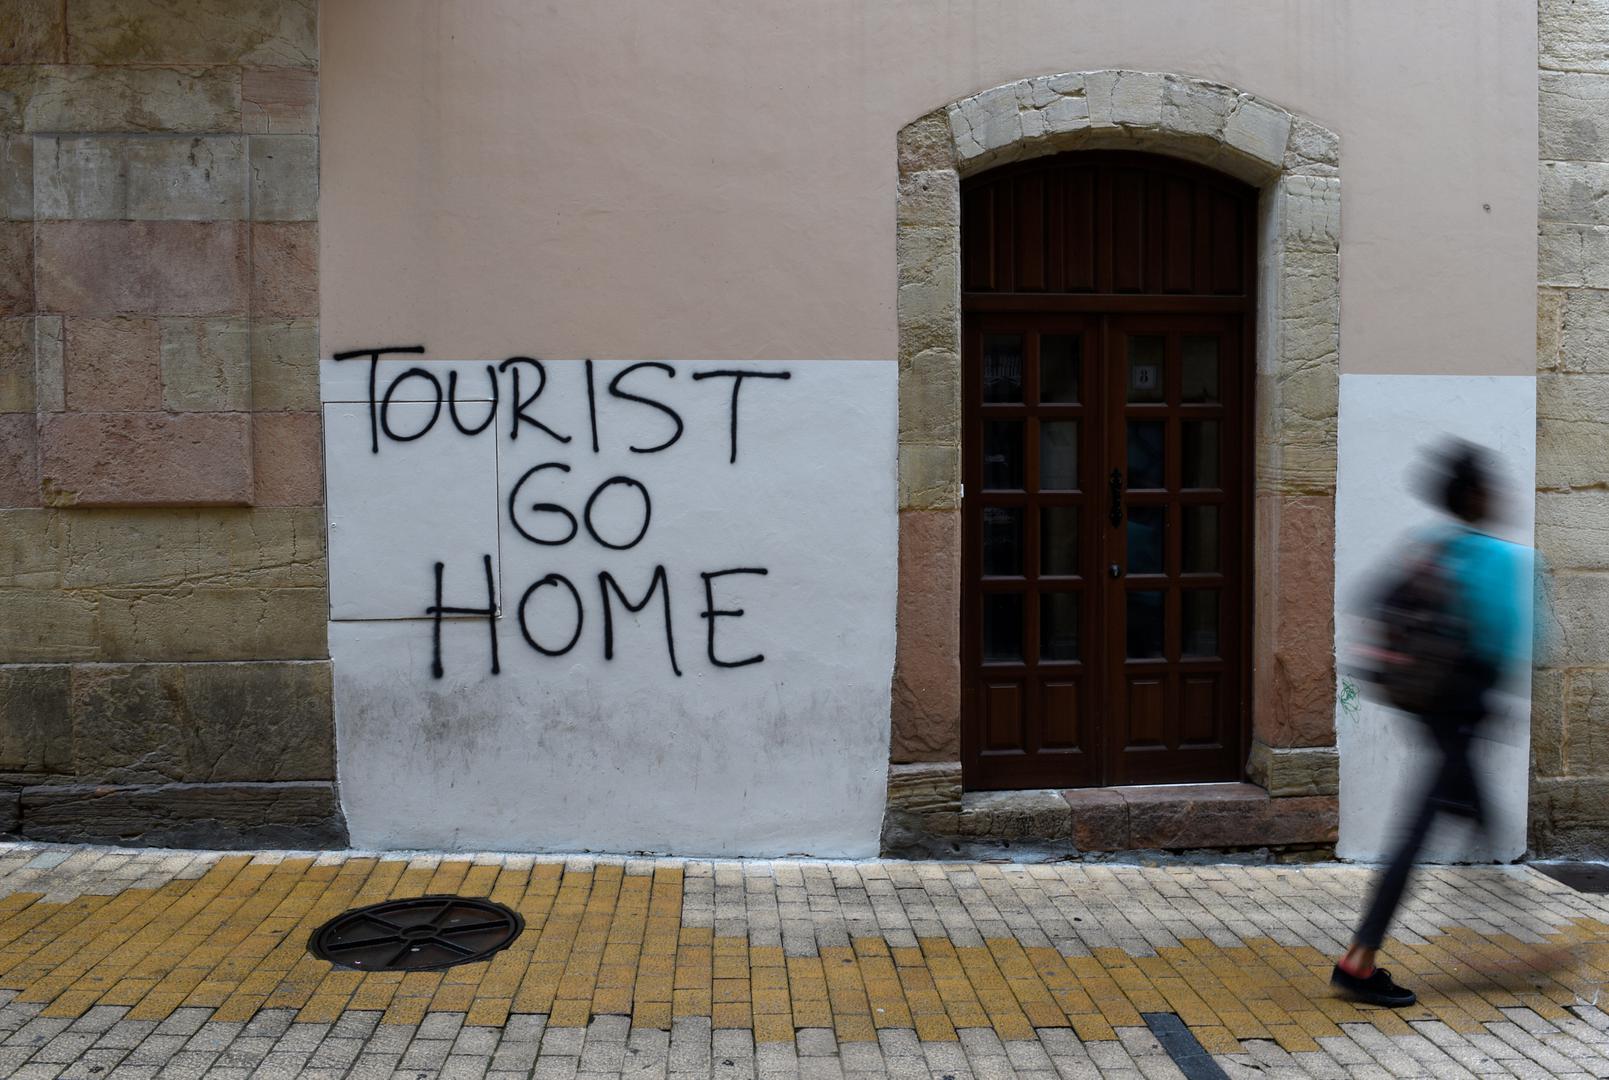 Druga poruka koja je osvanula u tom španjolskom gradu je "Turisti, vratite se kući'.